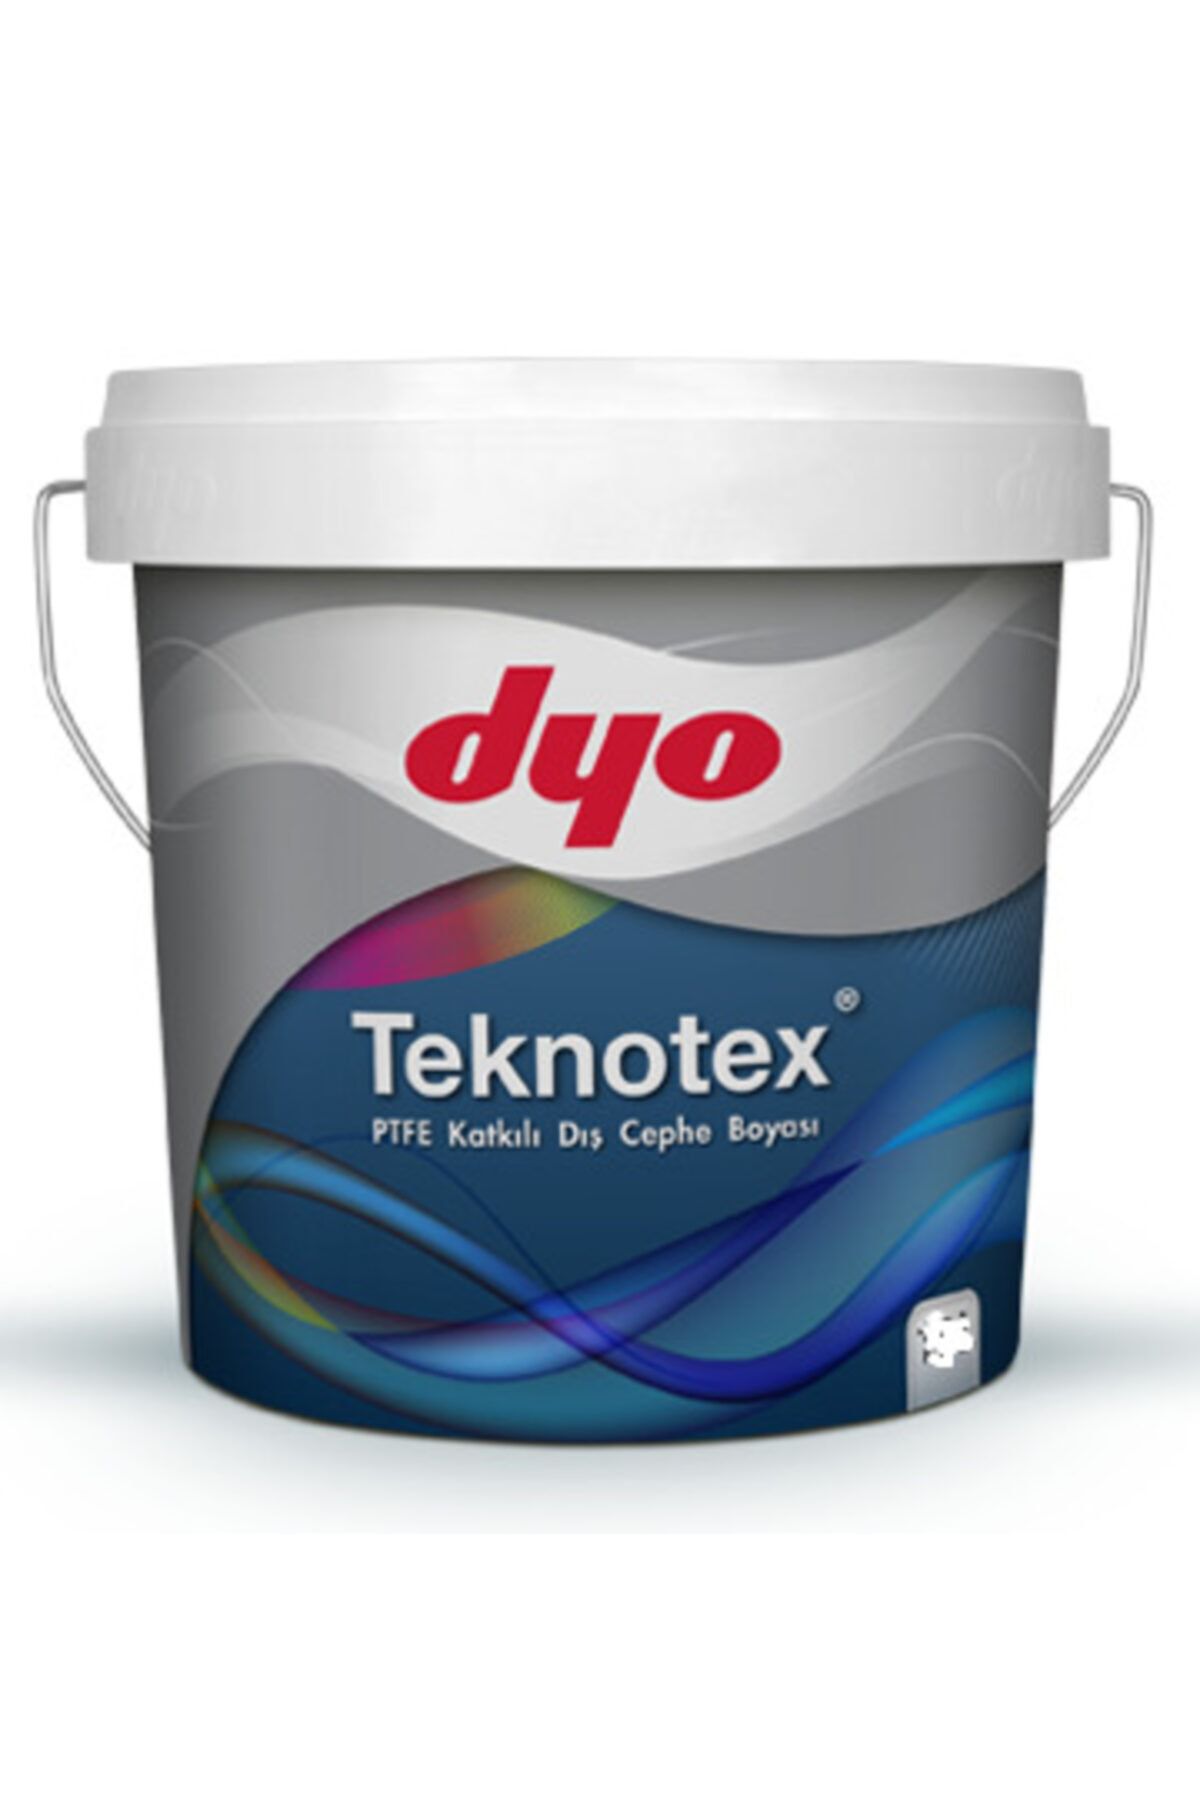 Dyo Teknotex Silikonlu Teflonlu Dış Cephe Boyası 2,5 lt (3,5K kg)